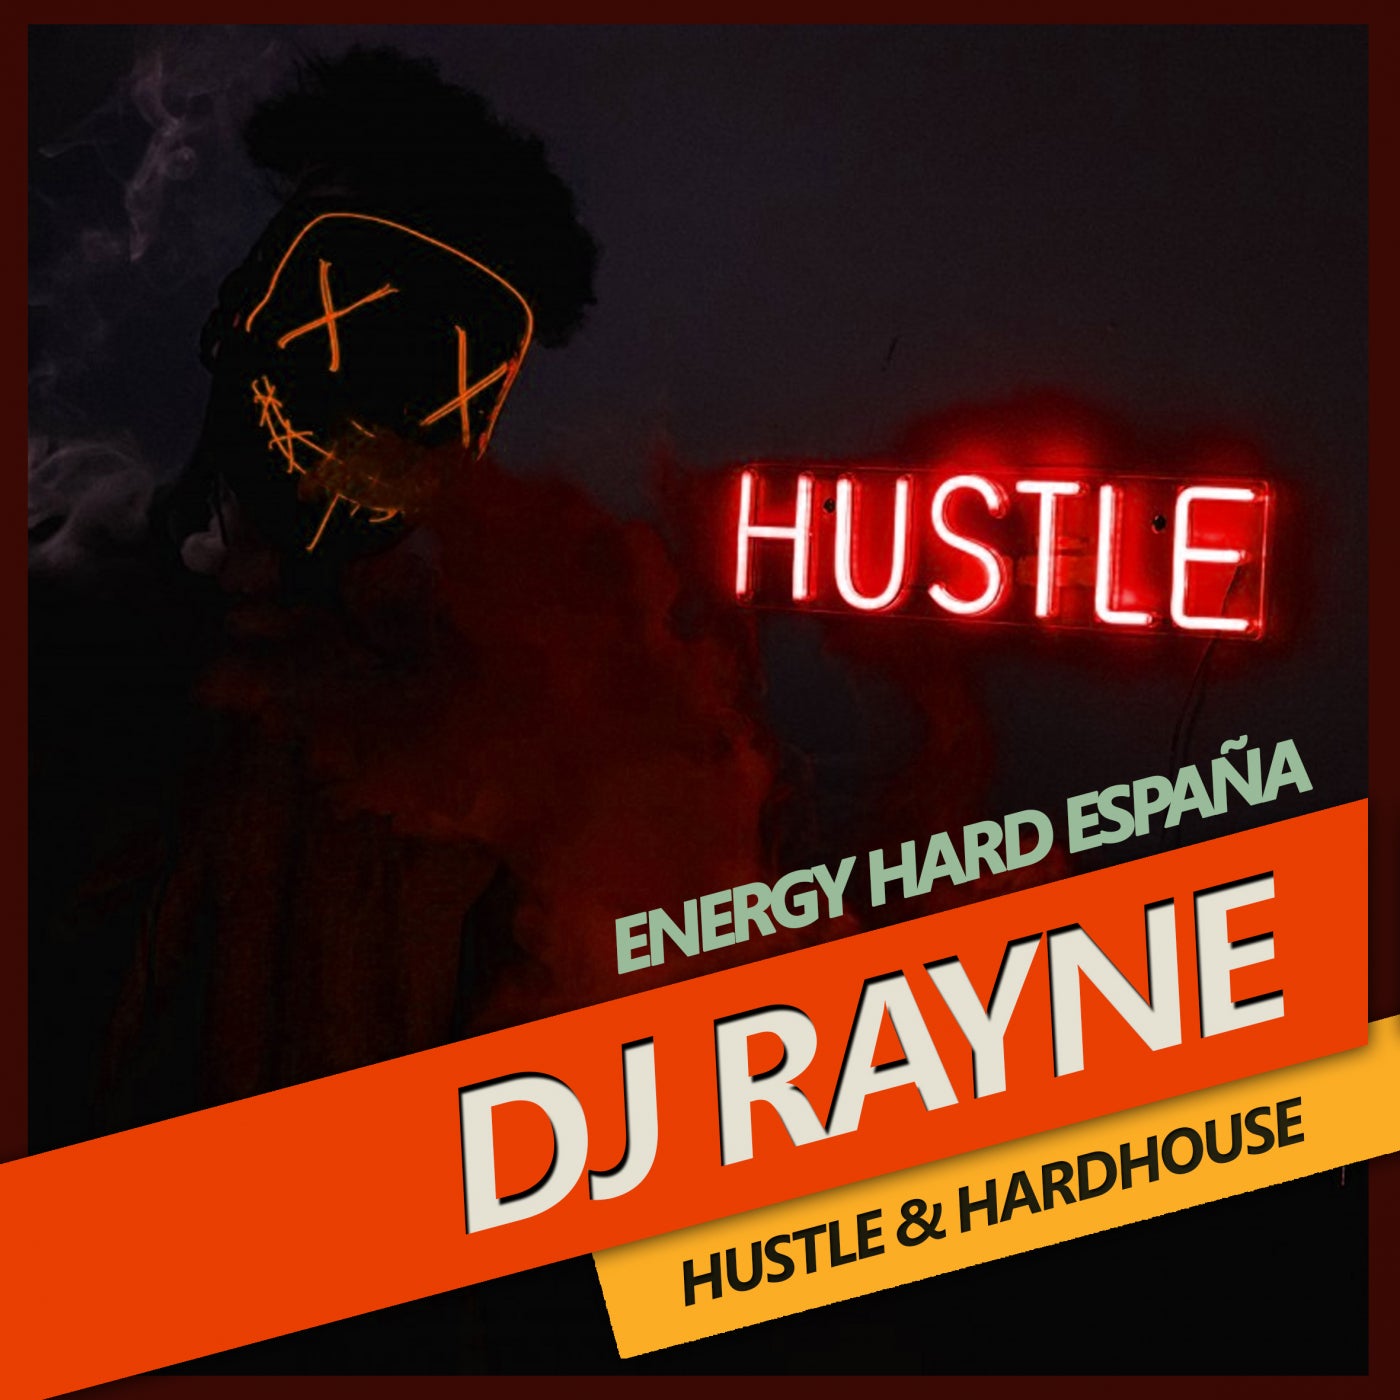 [EHE193] Dj Rayne - Hustle & Hardhouse 1b112b76-e3ce-45ad-b78e-13ae8397f25f